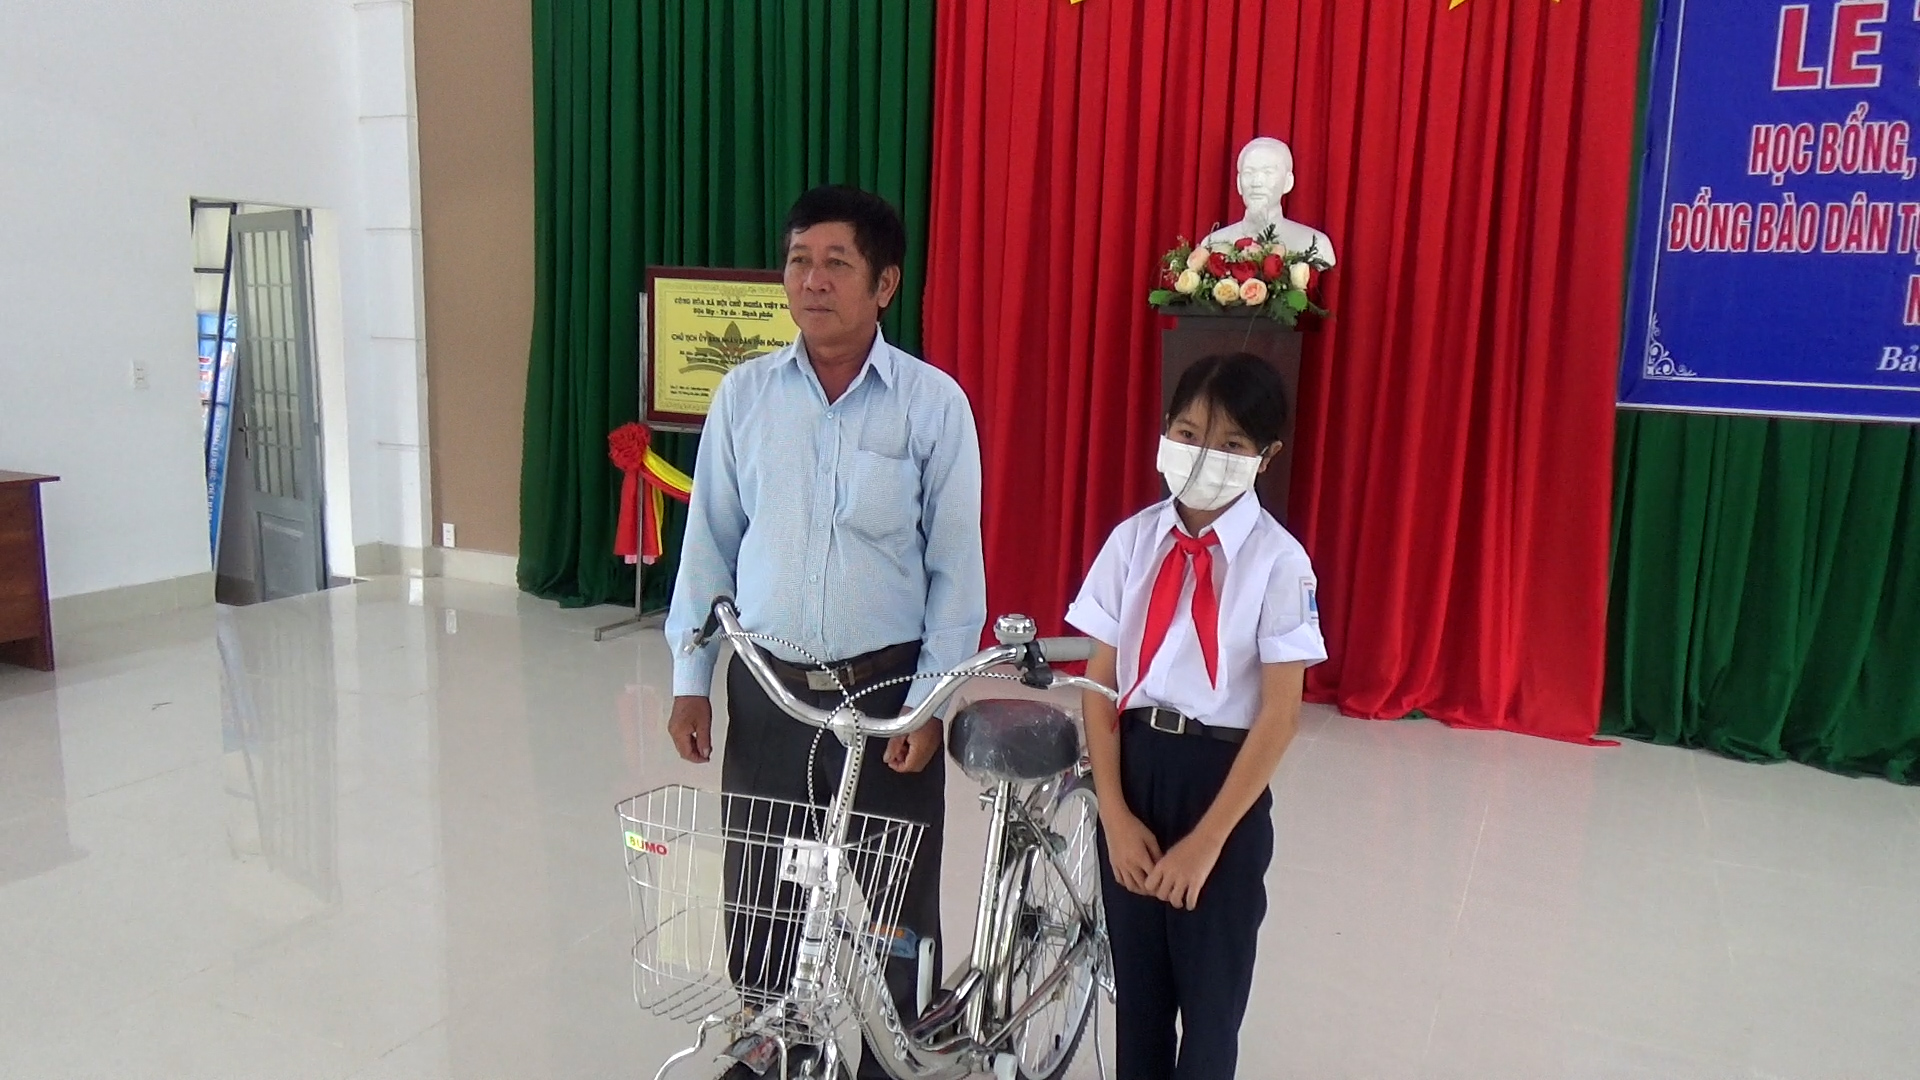 Ông Hoàng Thiên Bình, Phó ban điều hành mô hình tặng xe đạp cho học sinh.jpg